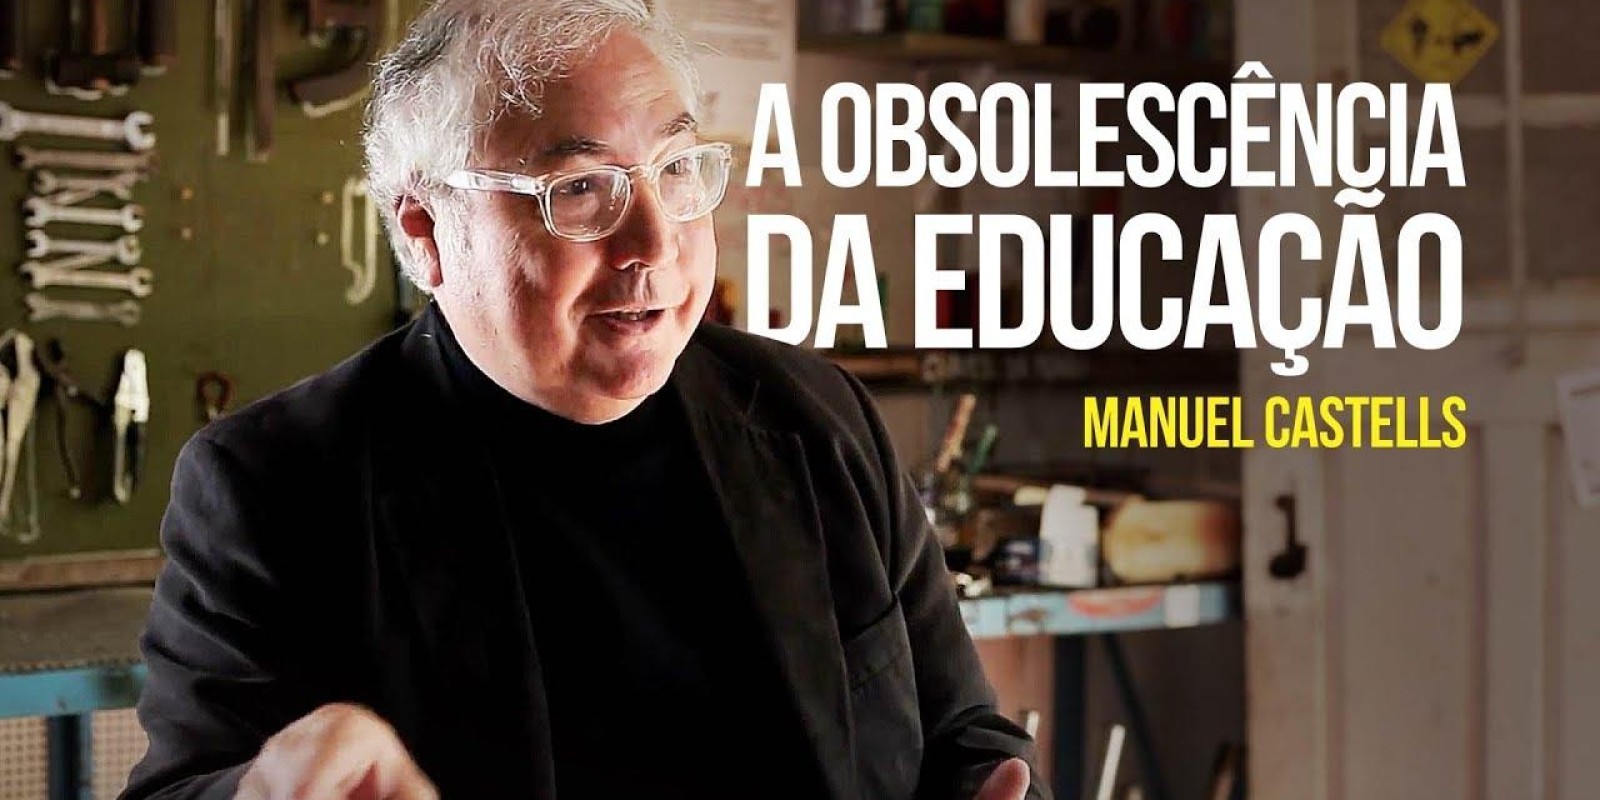 Manuel Castells - A obsolescência da educação